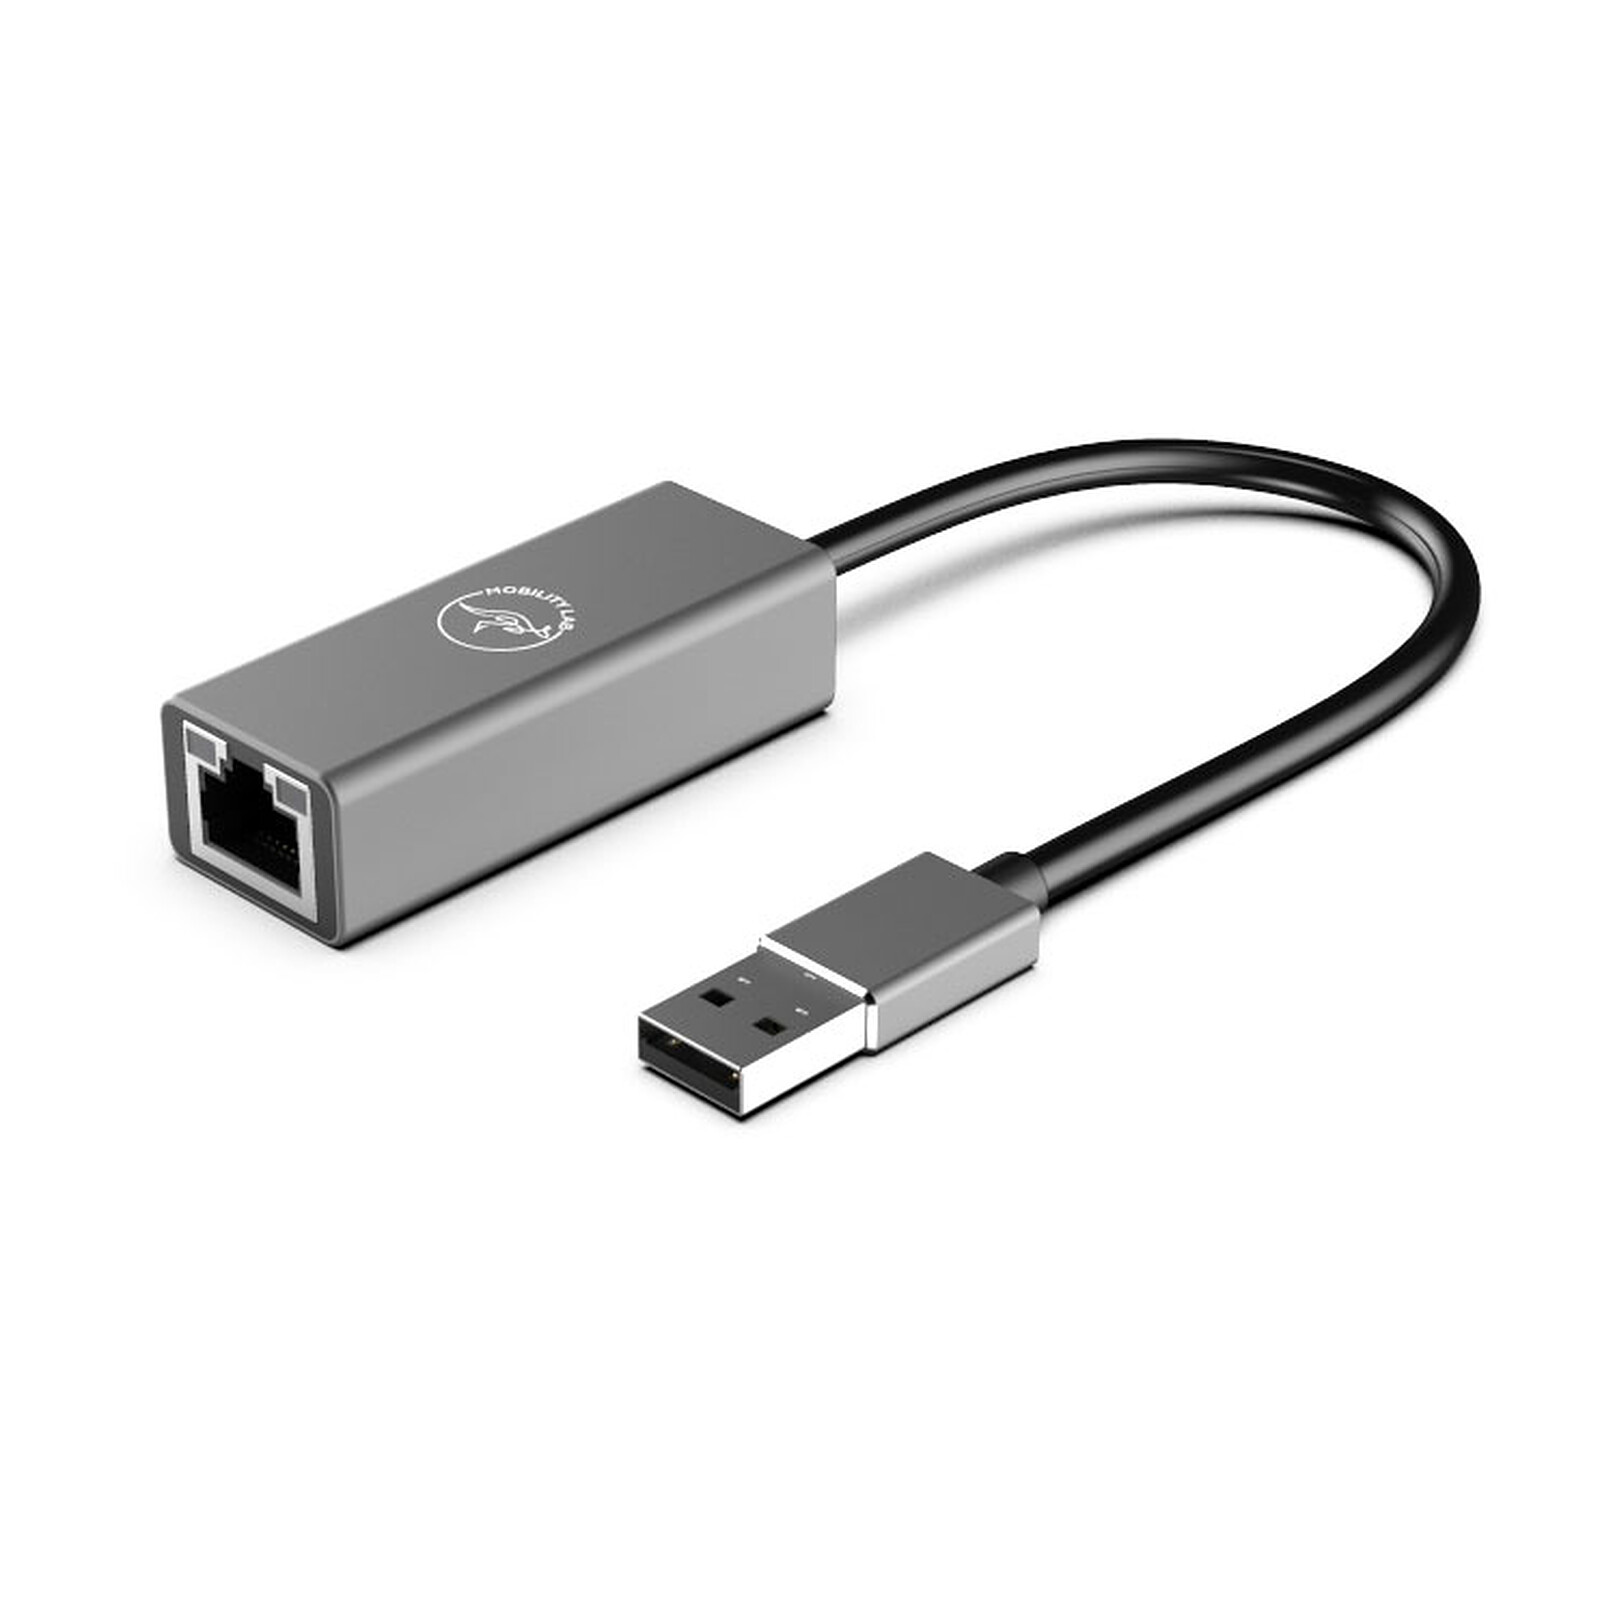 Adaptador Dell de USB-C a USB-A 3.0